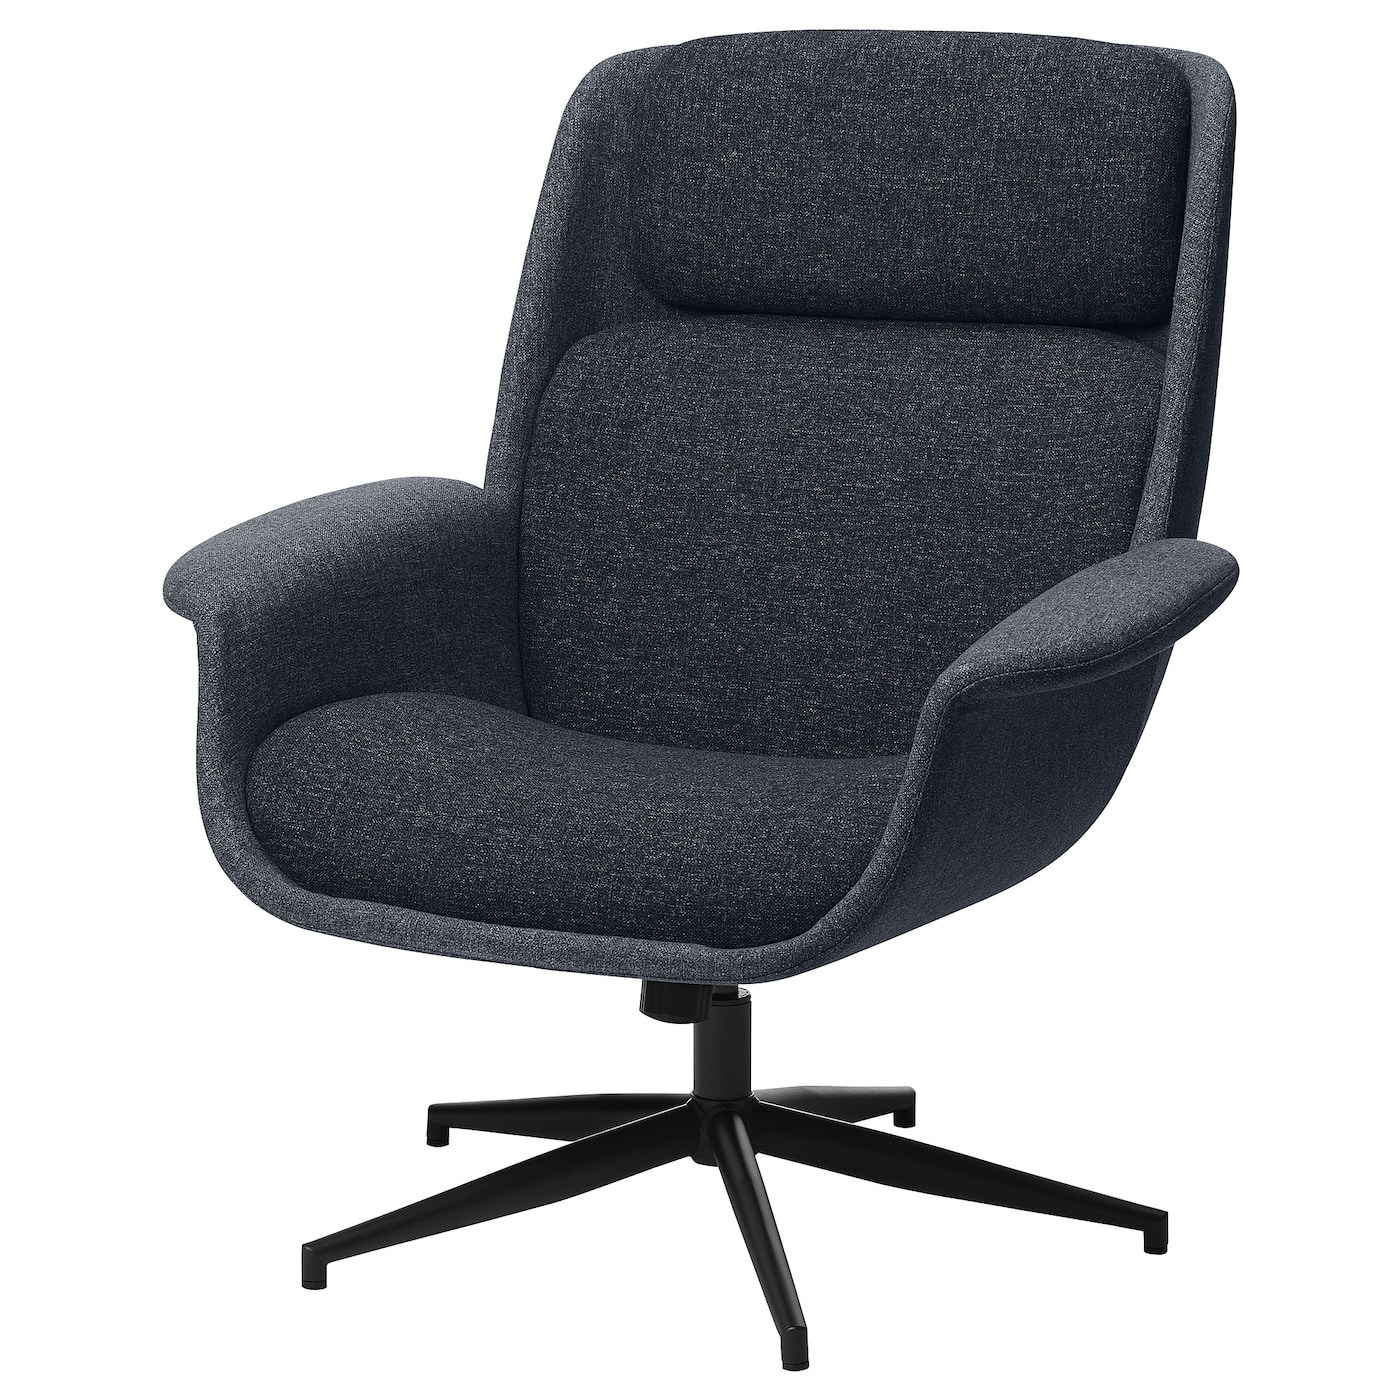 ЭЛЕБИ Вращающееся кресло, Гуннаред средний серый/темно-серый ÄLEBY IKEA кресло вентал арт alfa черный темно серый